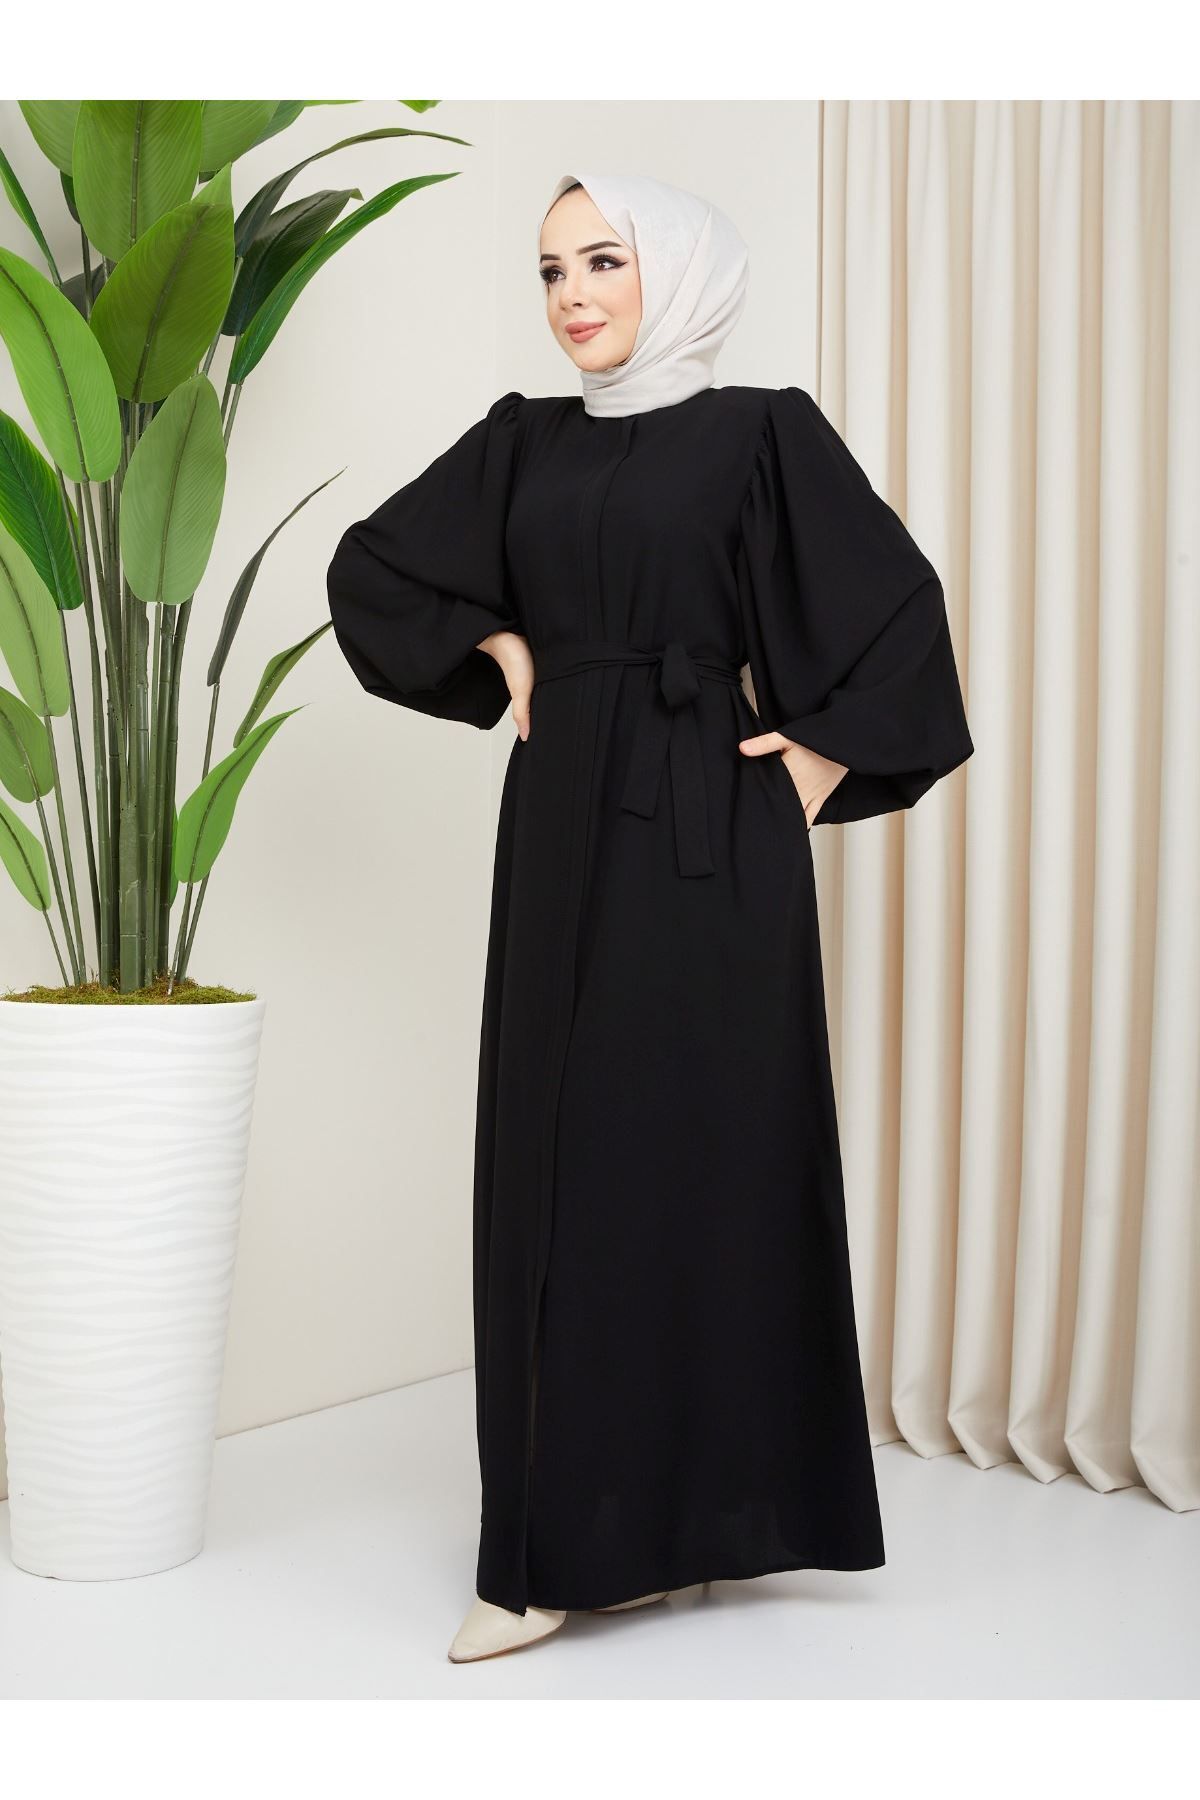 Zeynep Tesettür Ebrar Model Abaya - Siyah